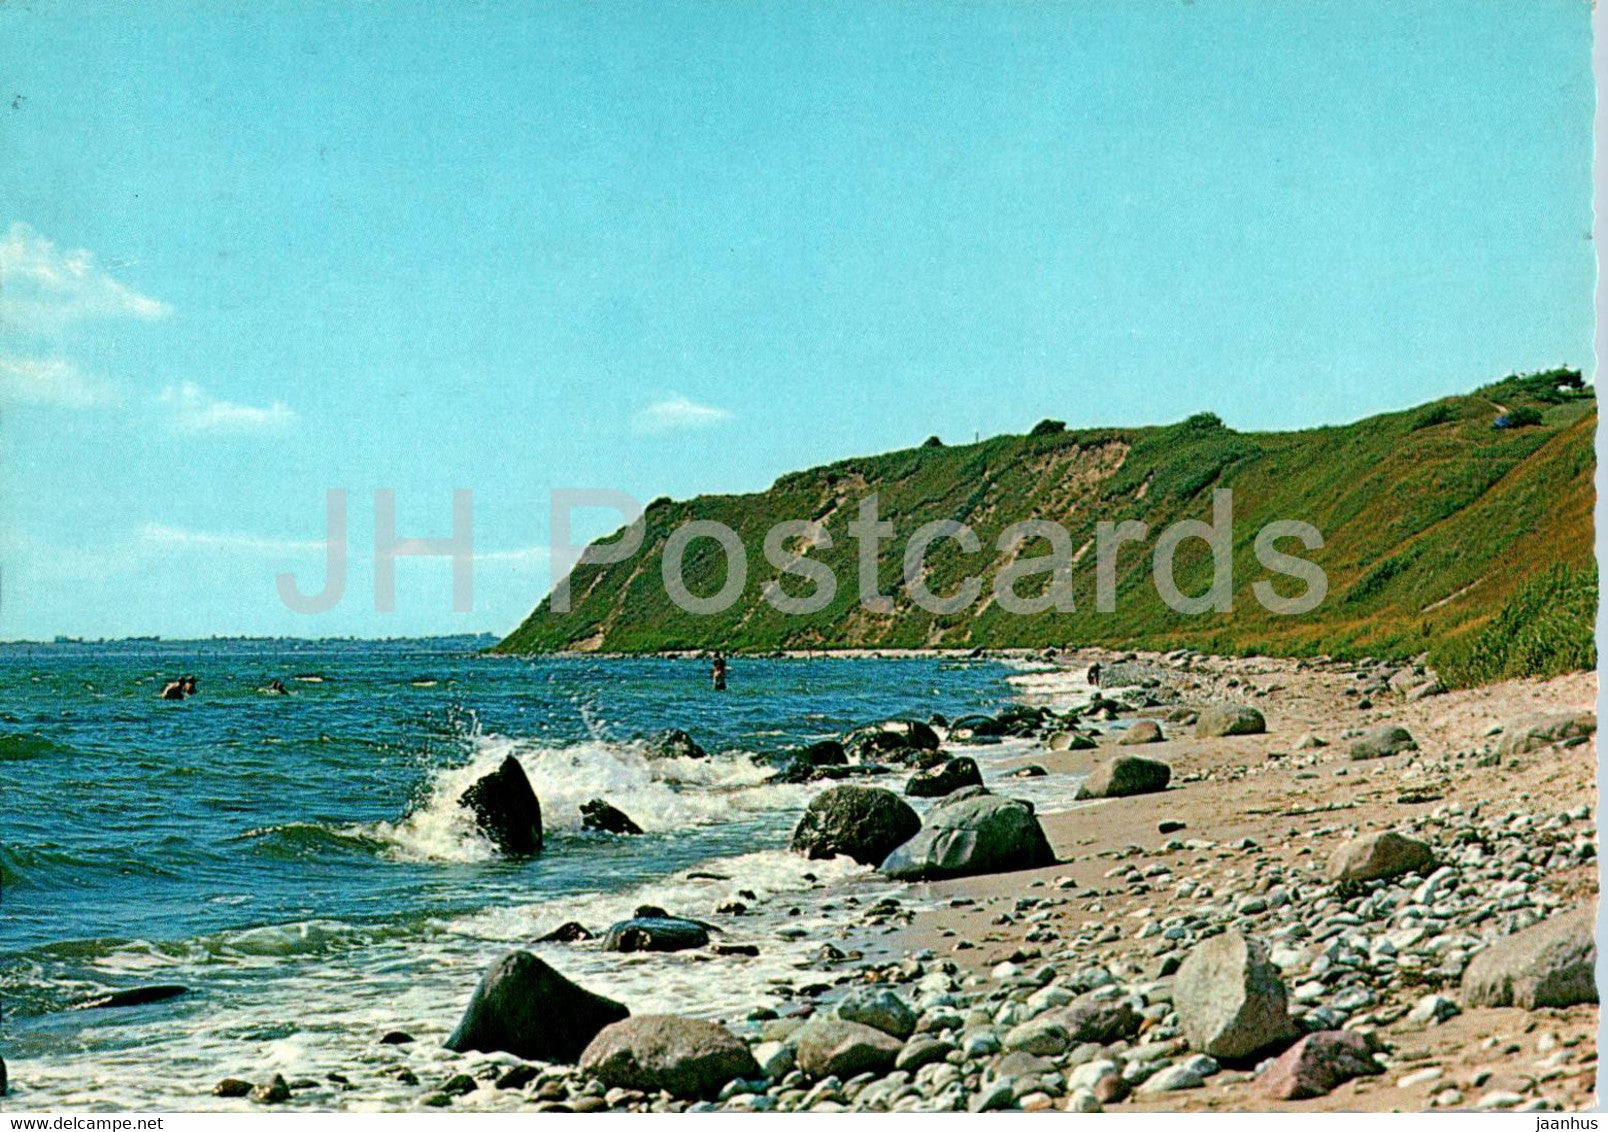 Ristinge Klint - Langeland - 6014 - 1974 - Denmark - used - JH Postcards